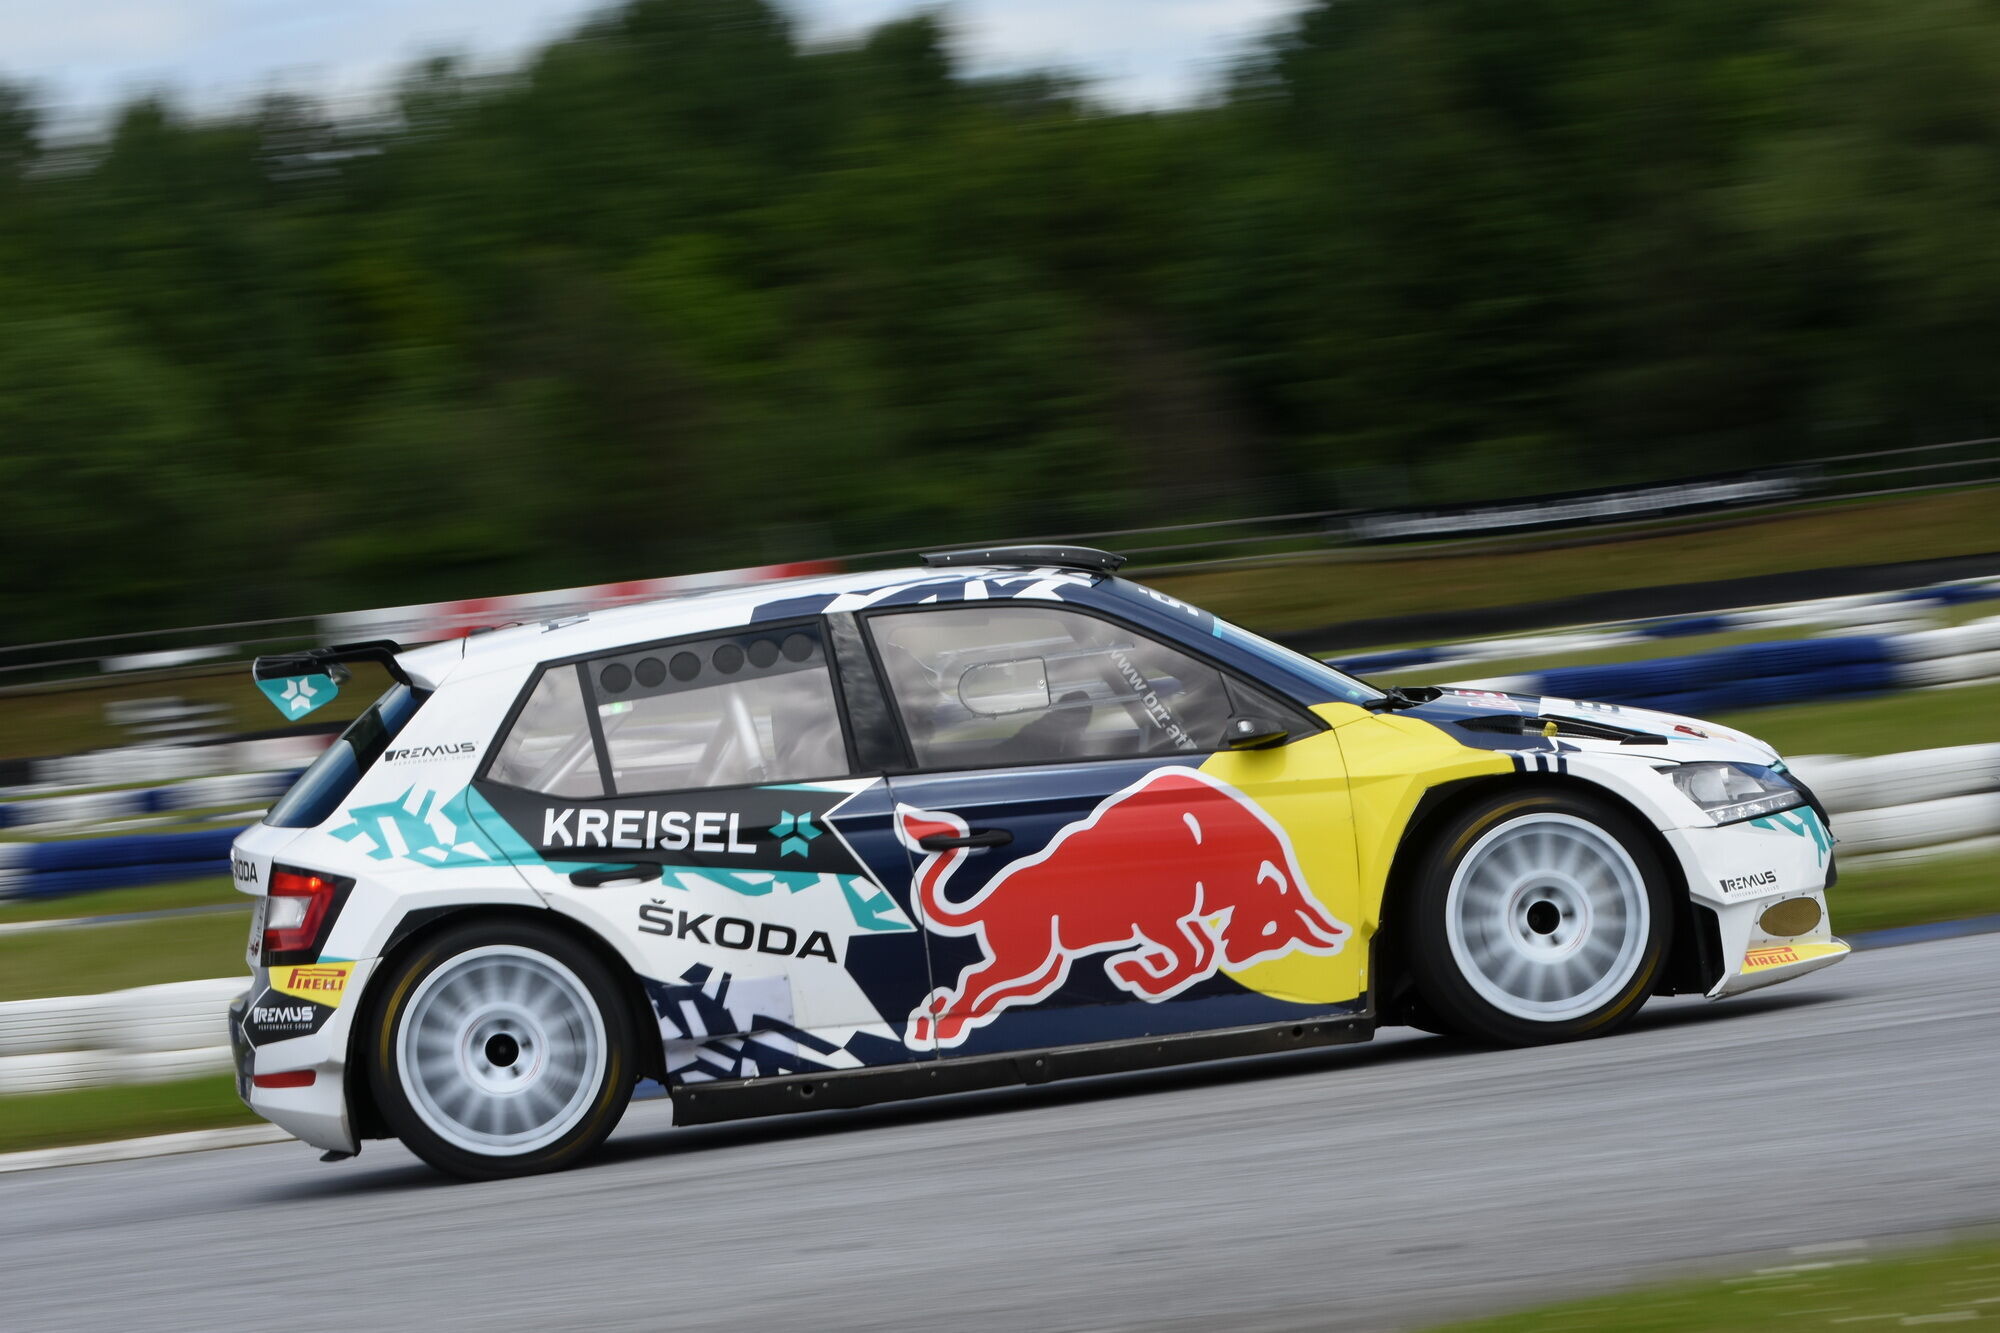 Выступать болид Skoda RE-X1 Kreisel будет под флагом гоночной команды Baumschlager Rallye & Racing